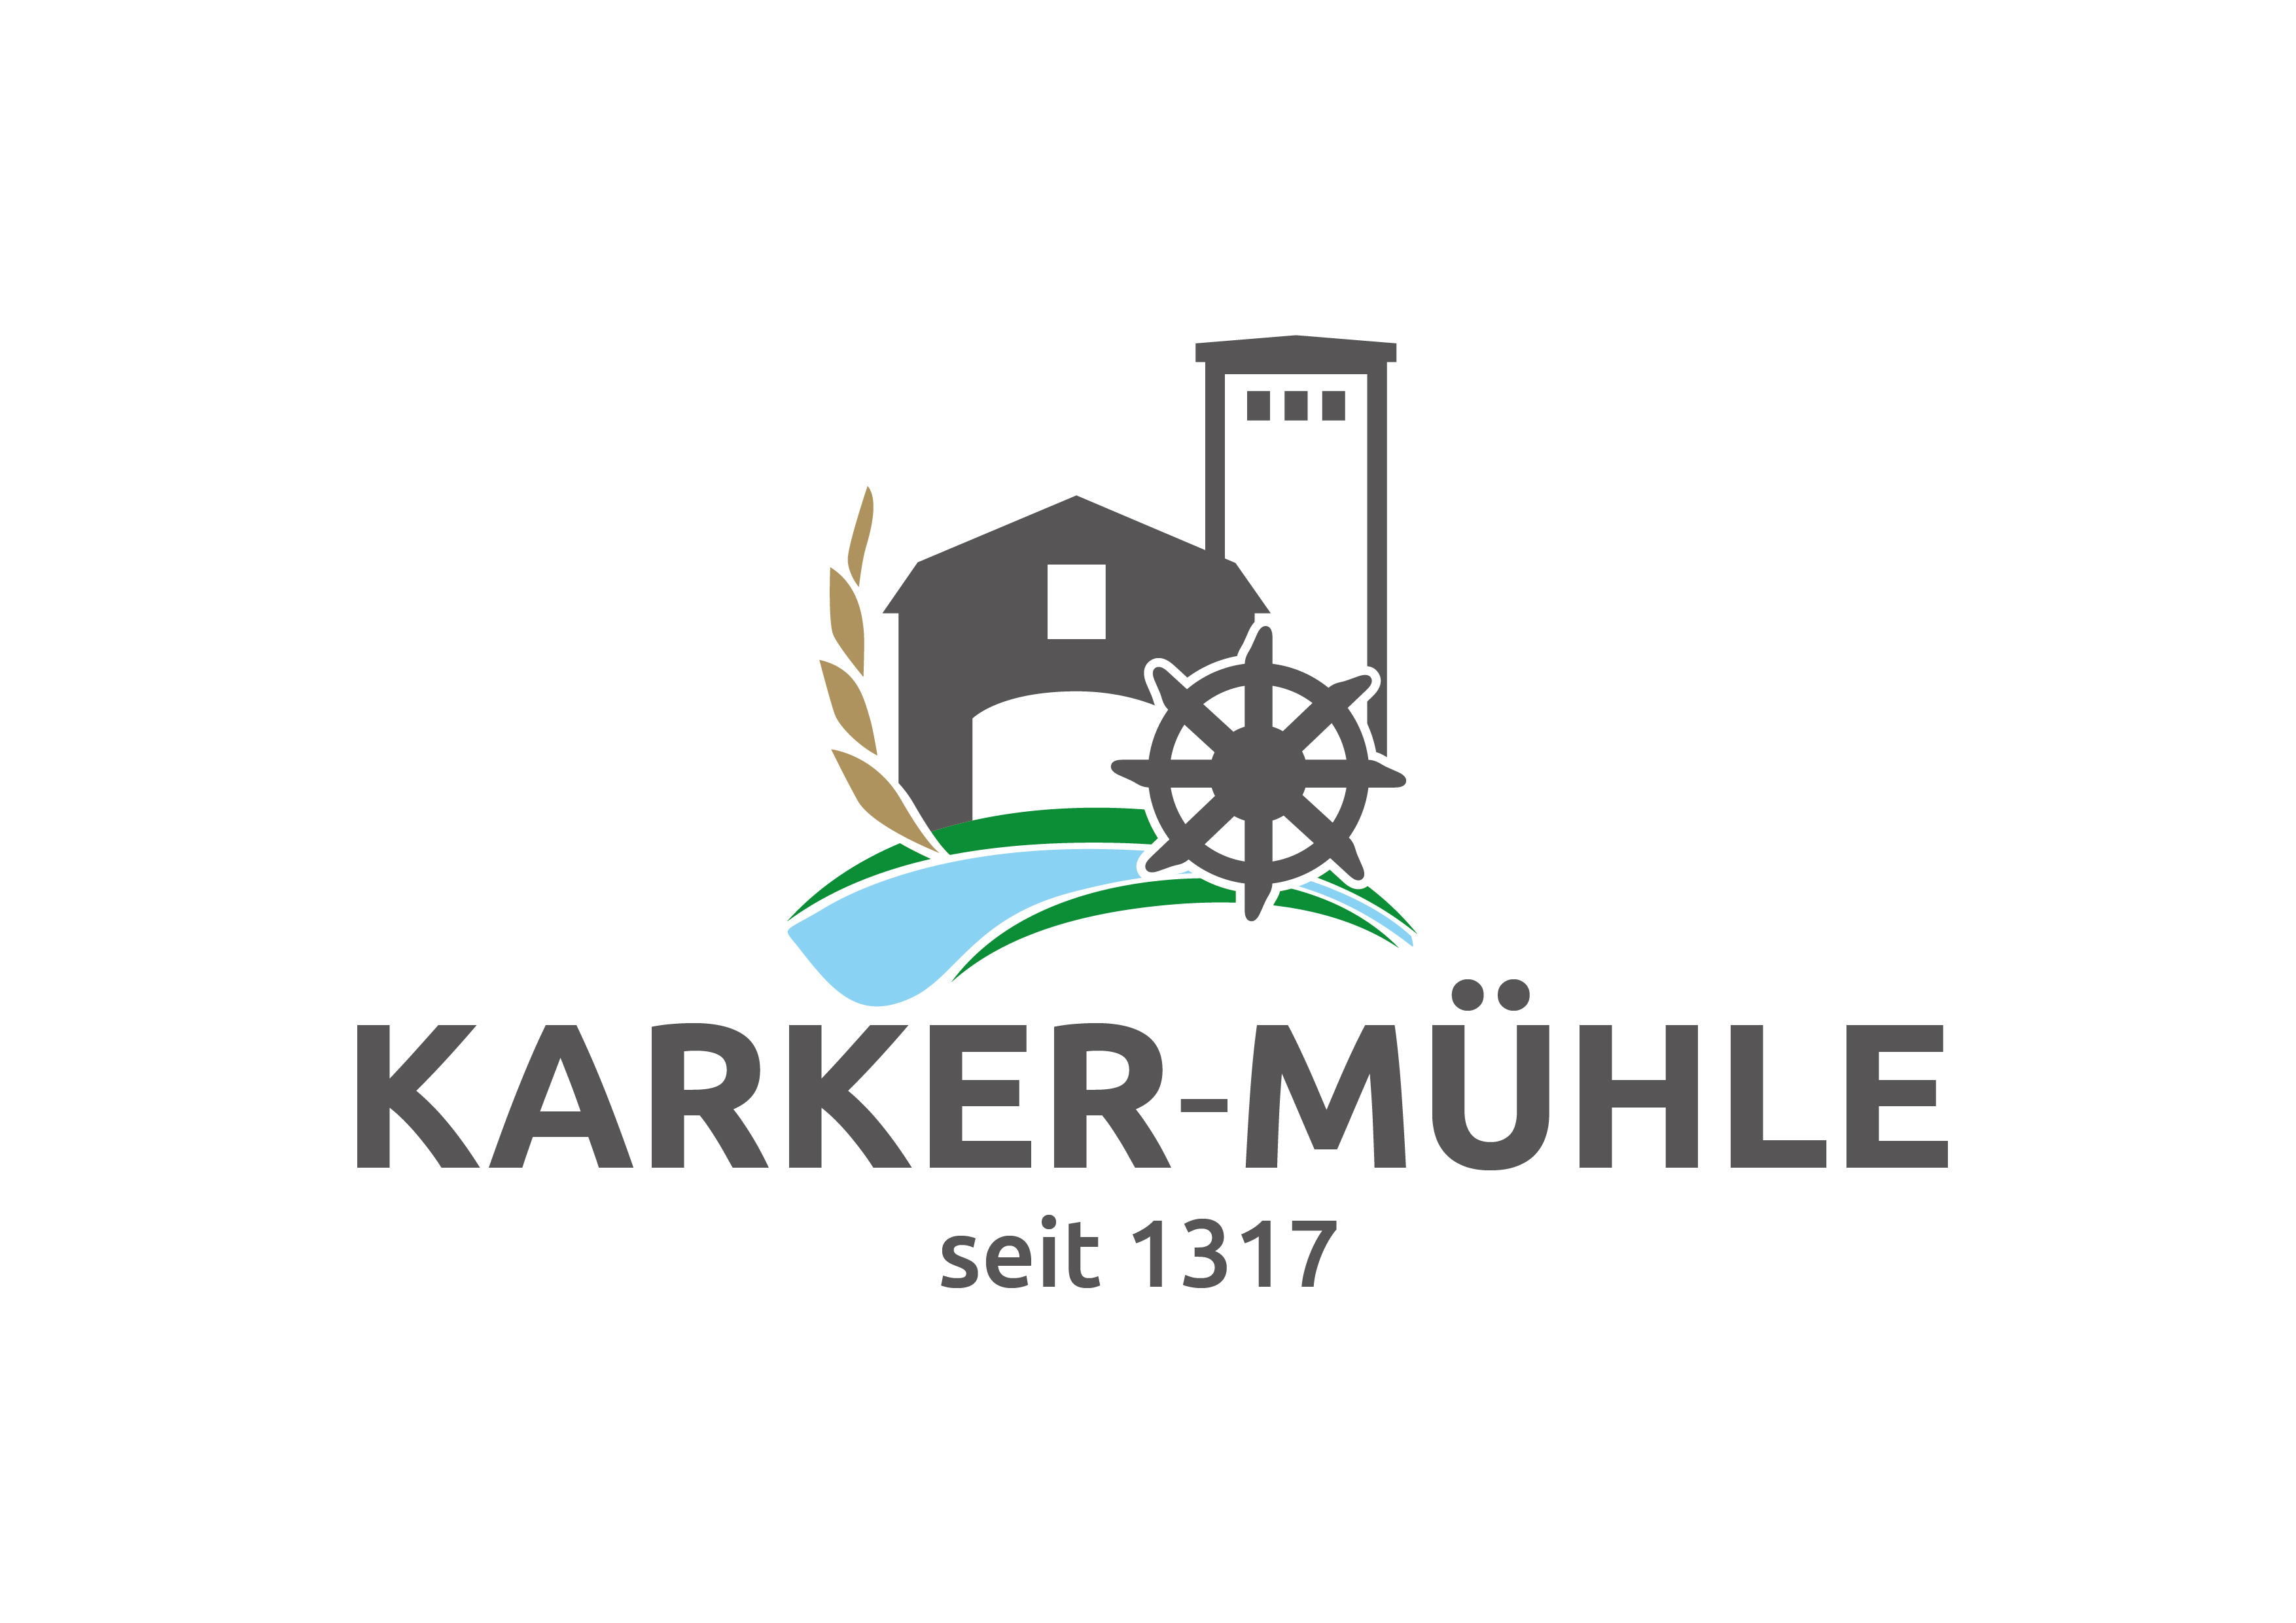 Karker-Mühle